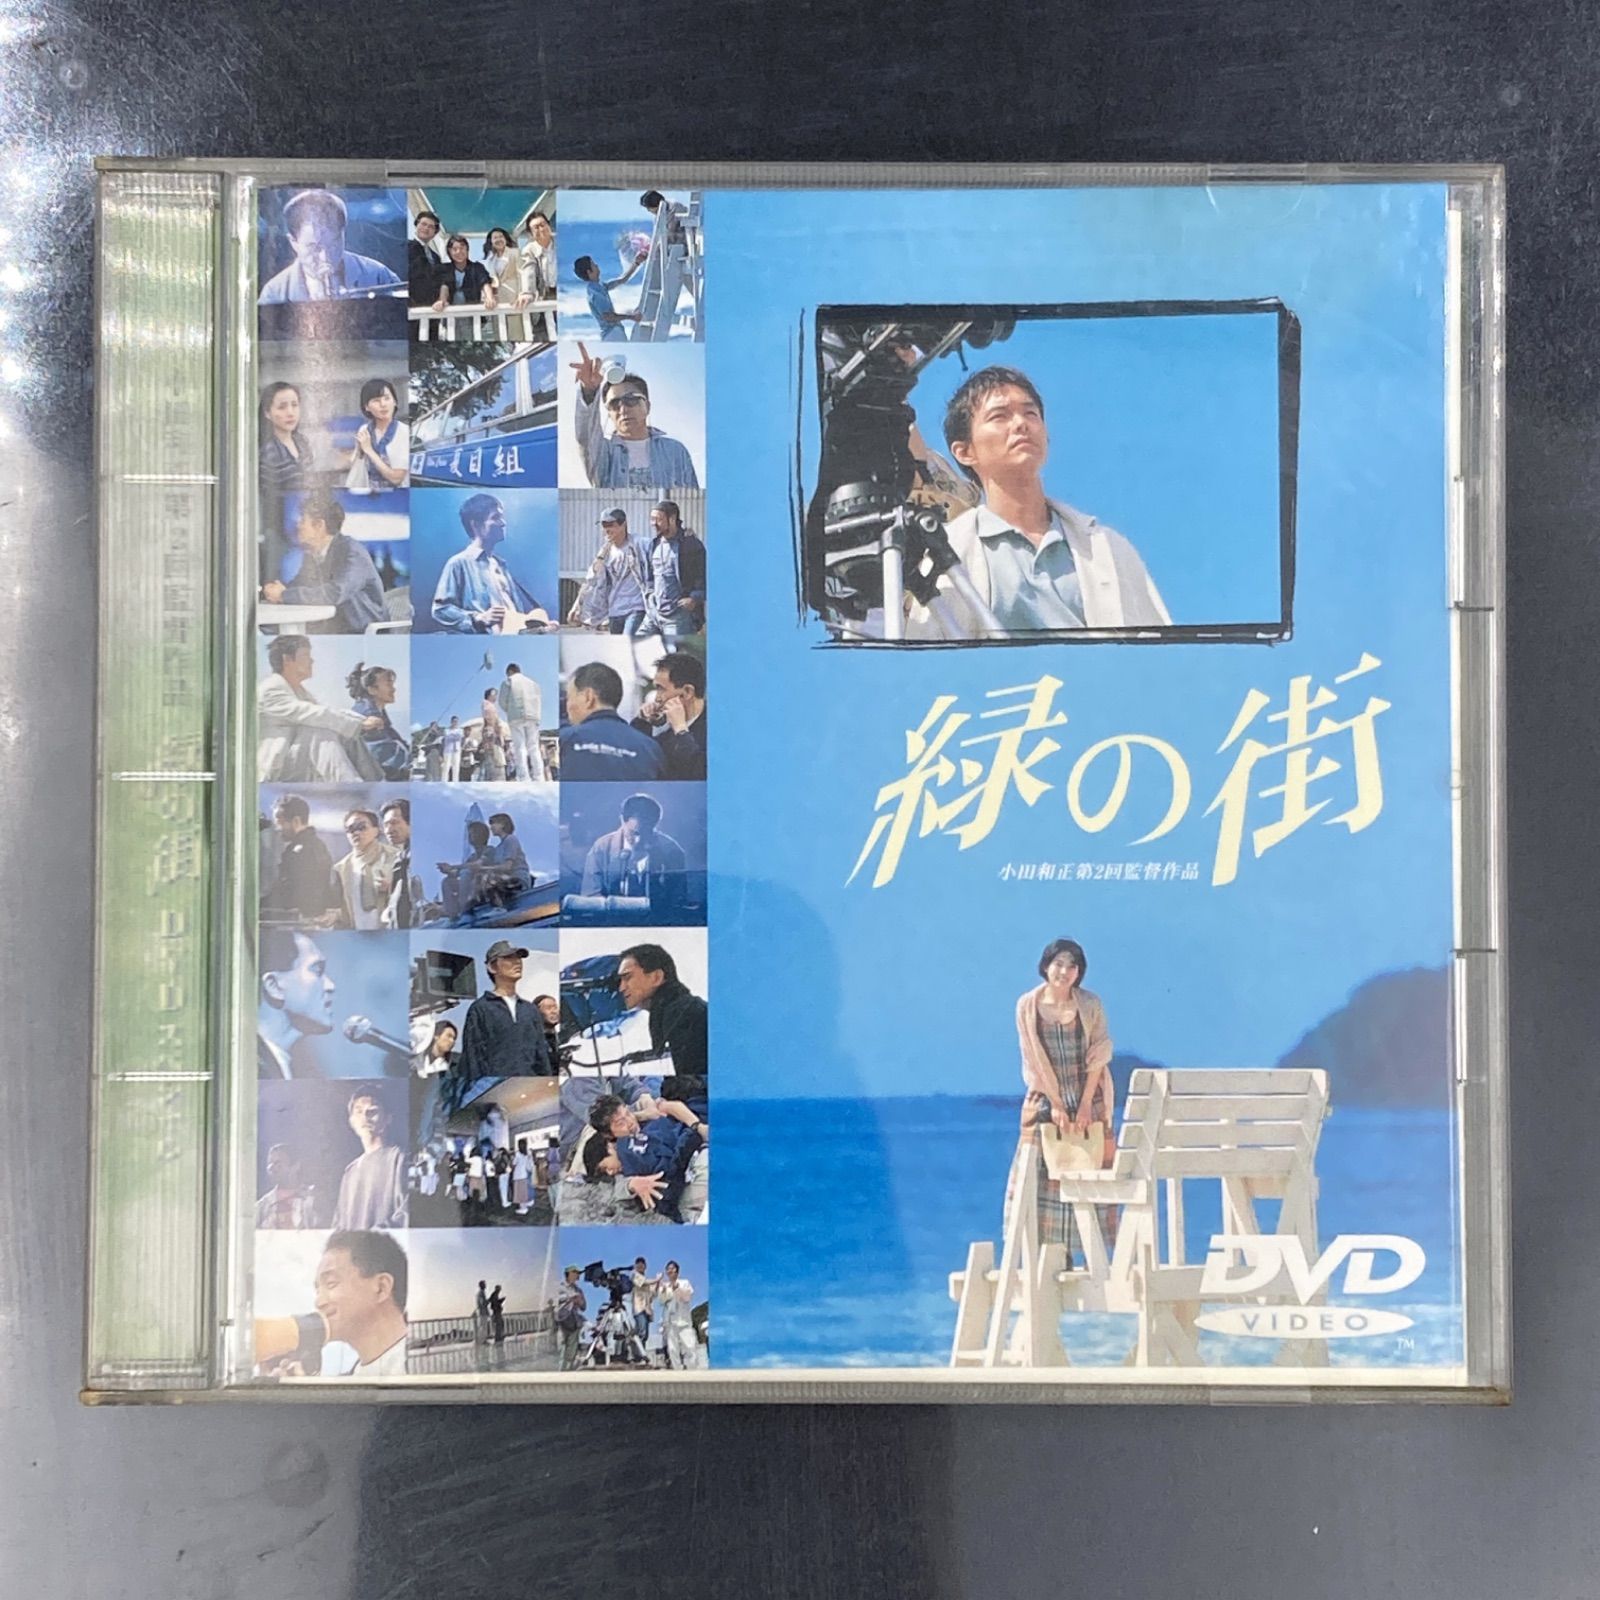 オンラインショップ 小田和正 第2回監督作品 緑の街DVD - DVD